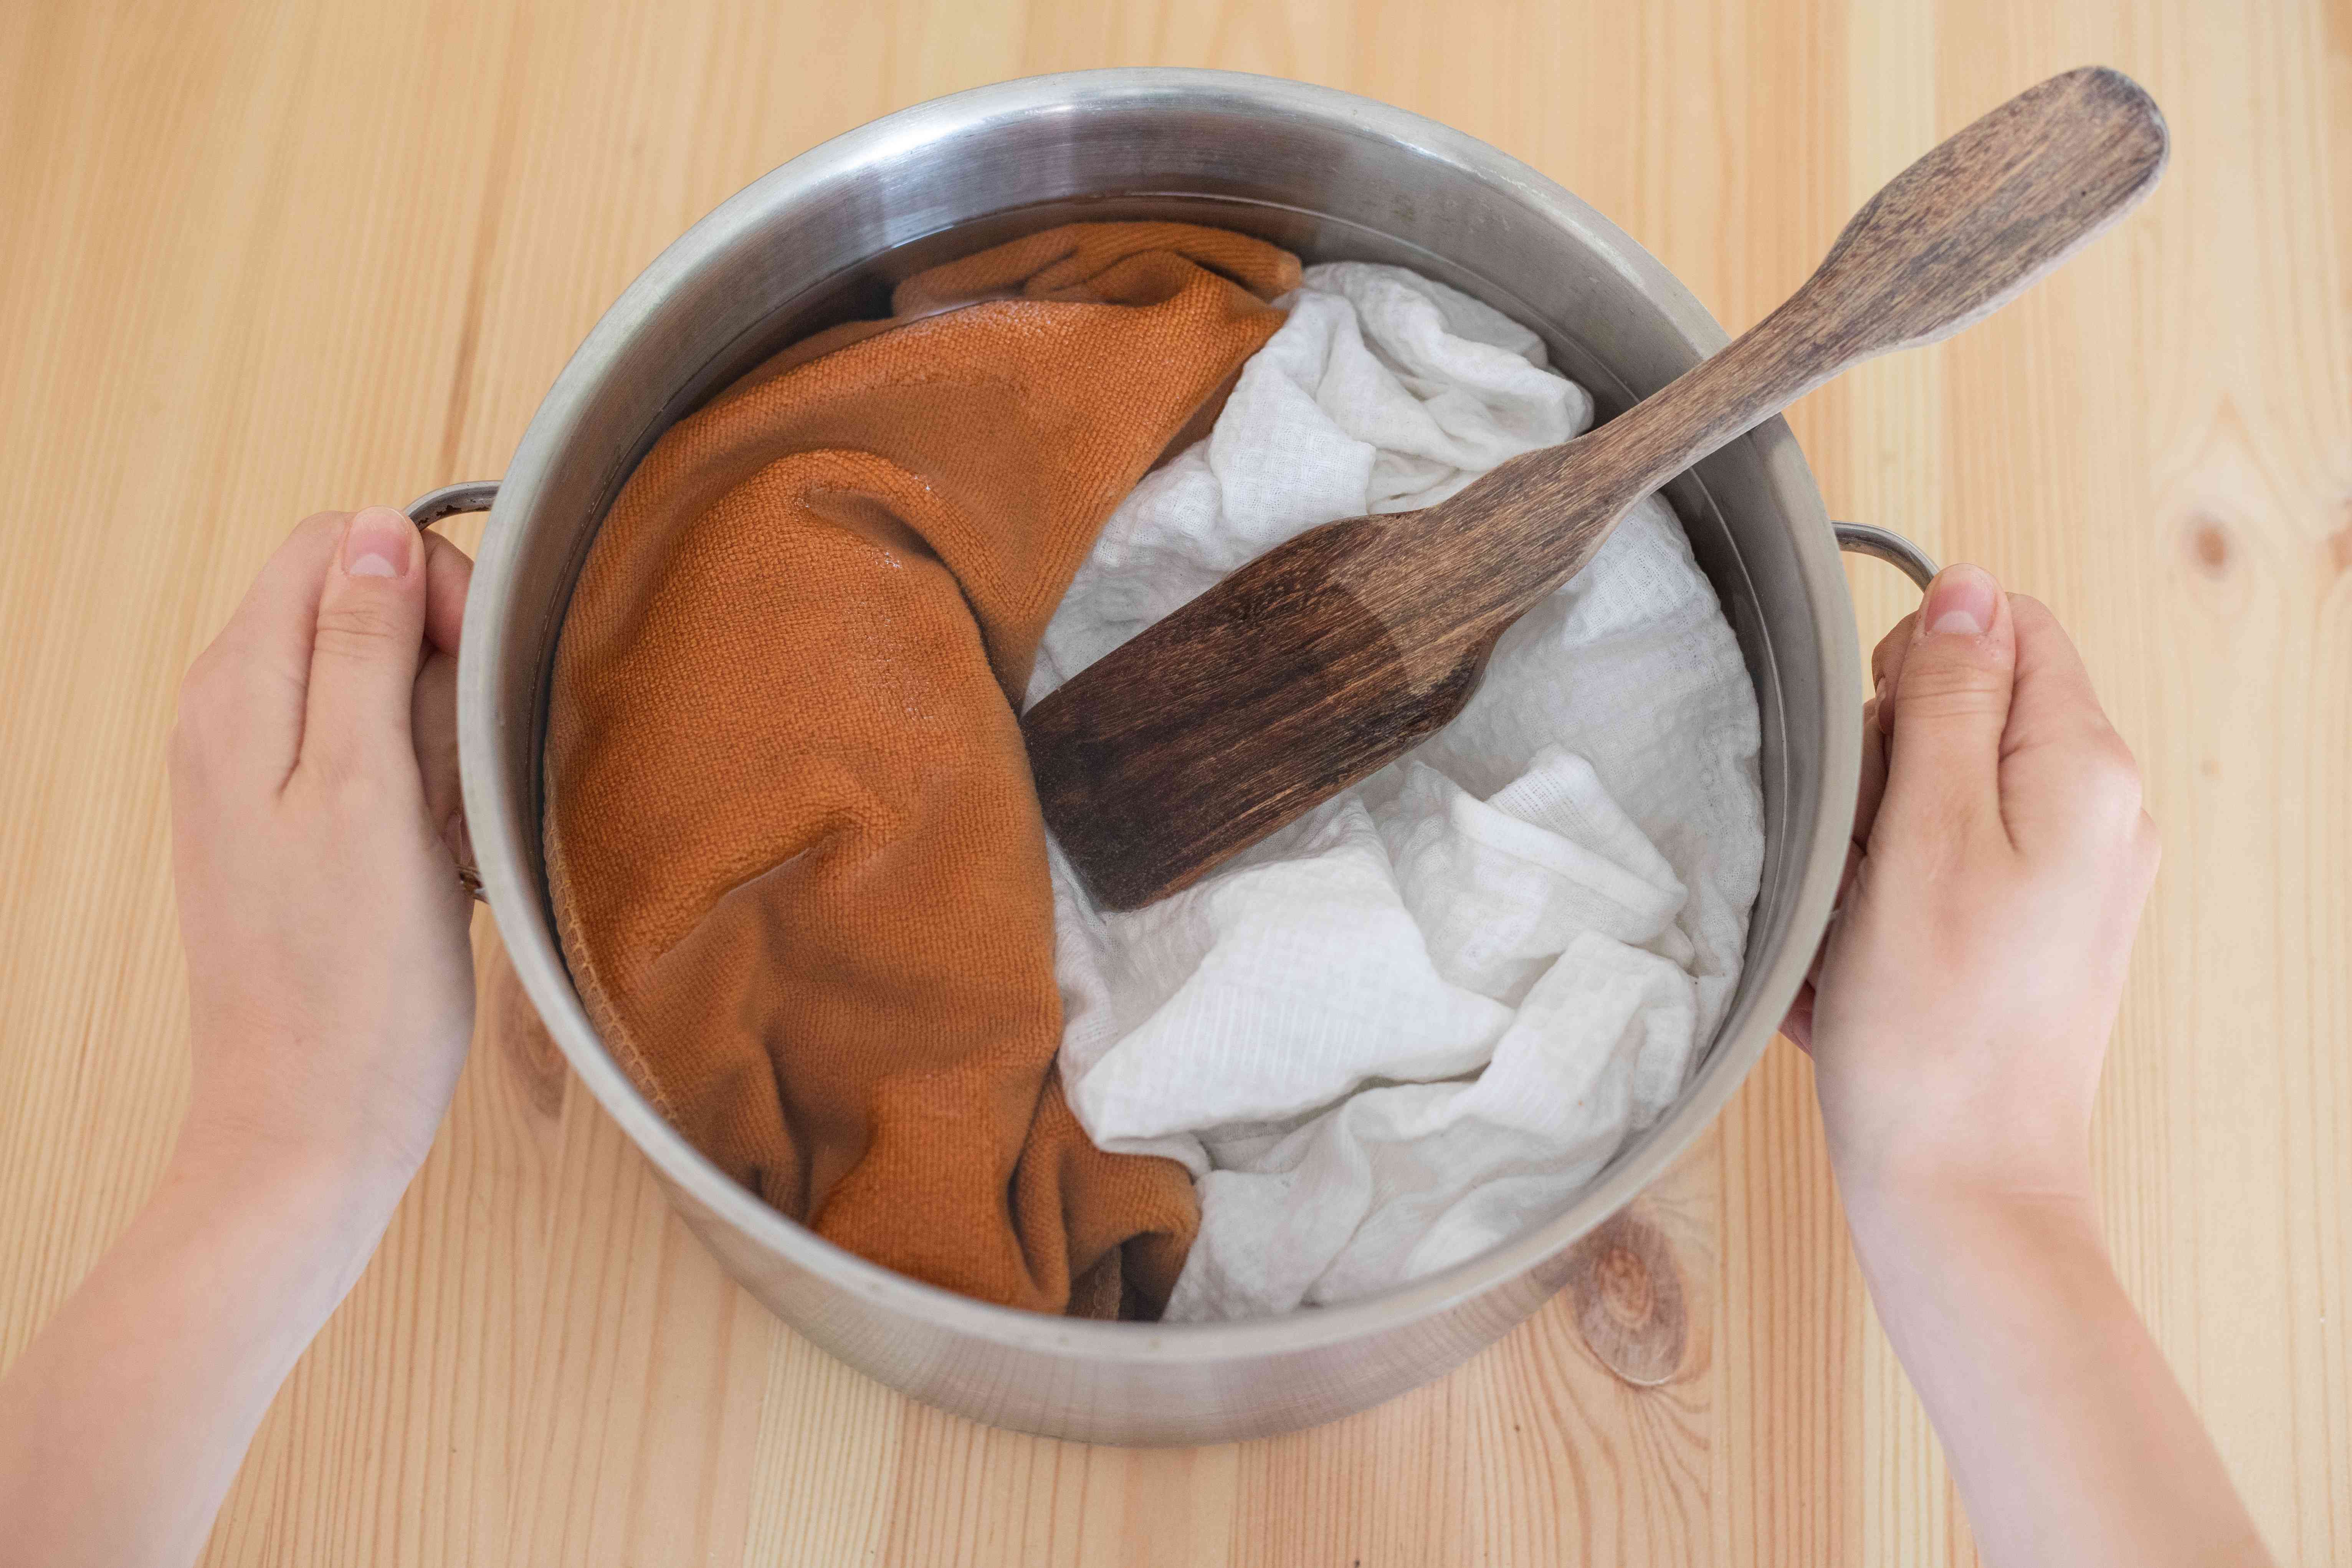 衣服在钢制汤锅中浸泡在醋水混合物中，用手握住两边